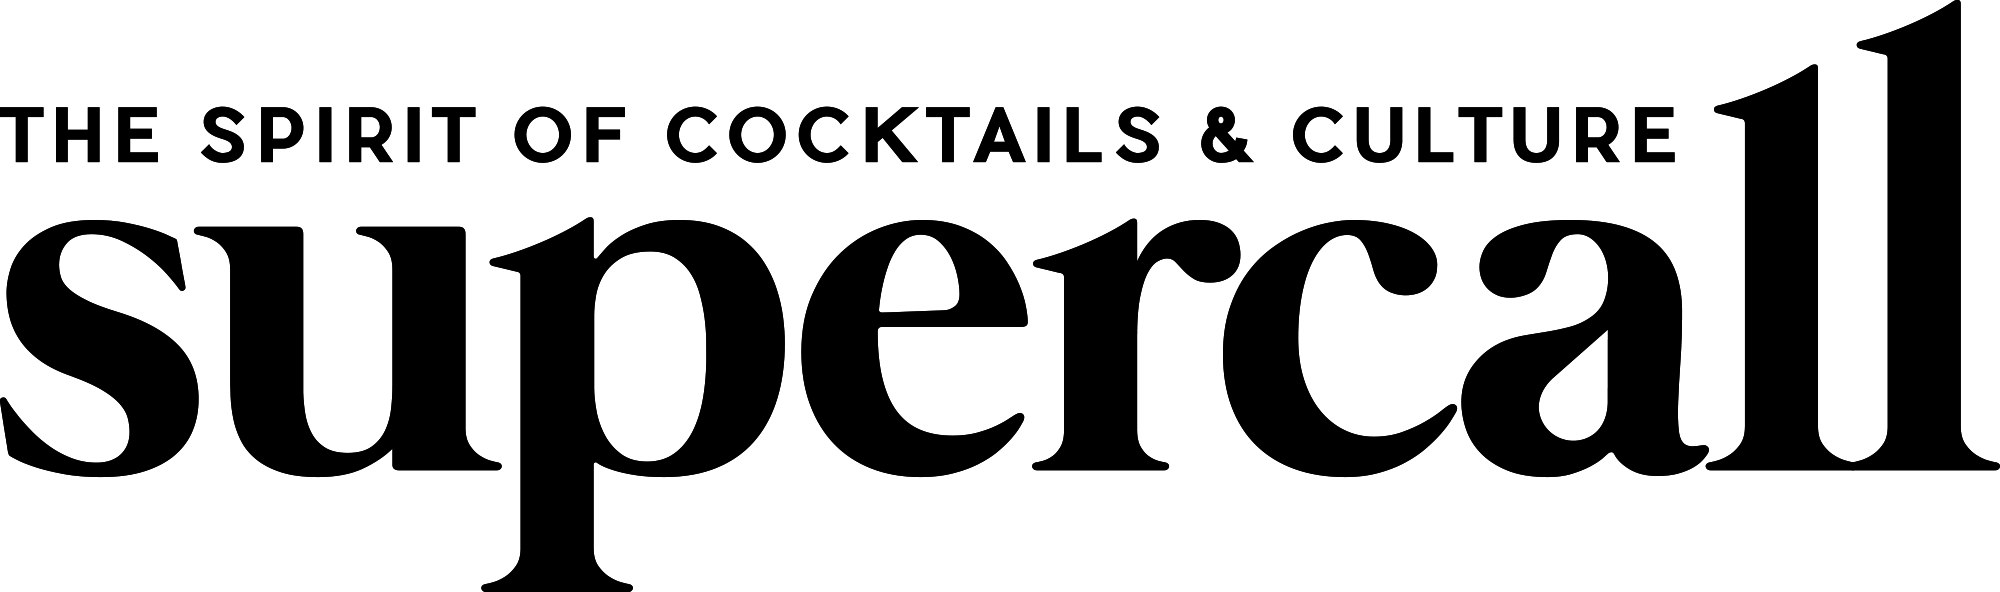 Supercall logo